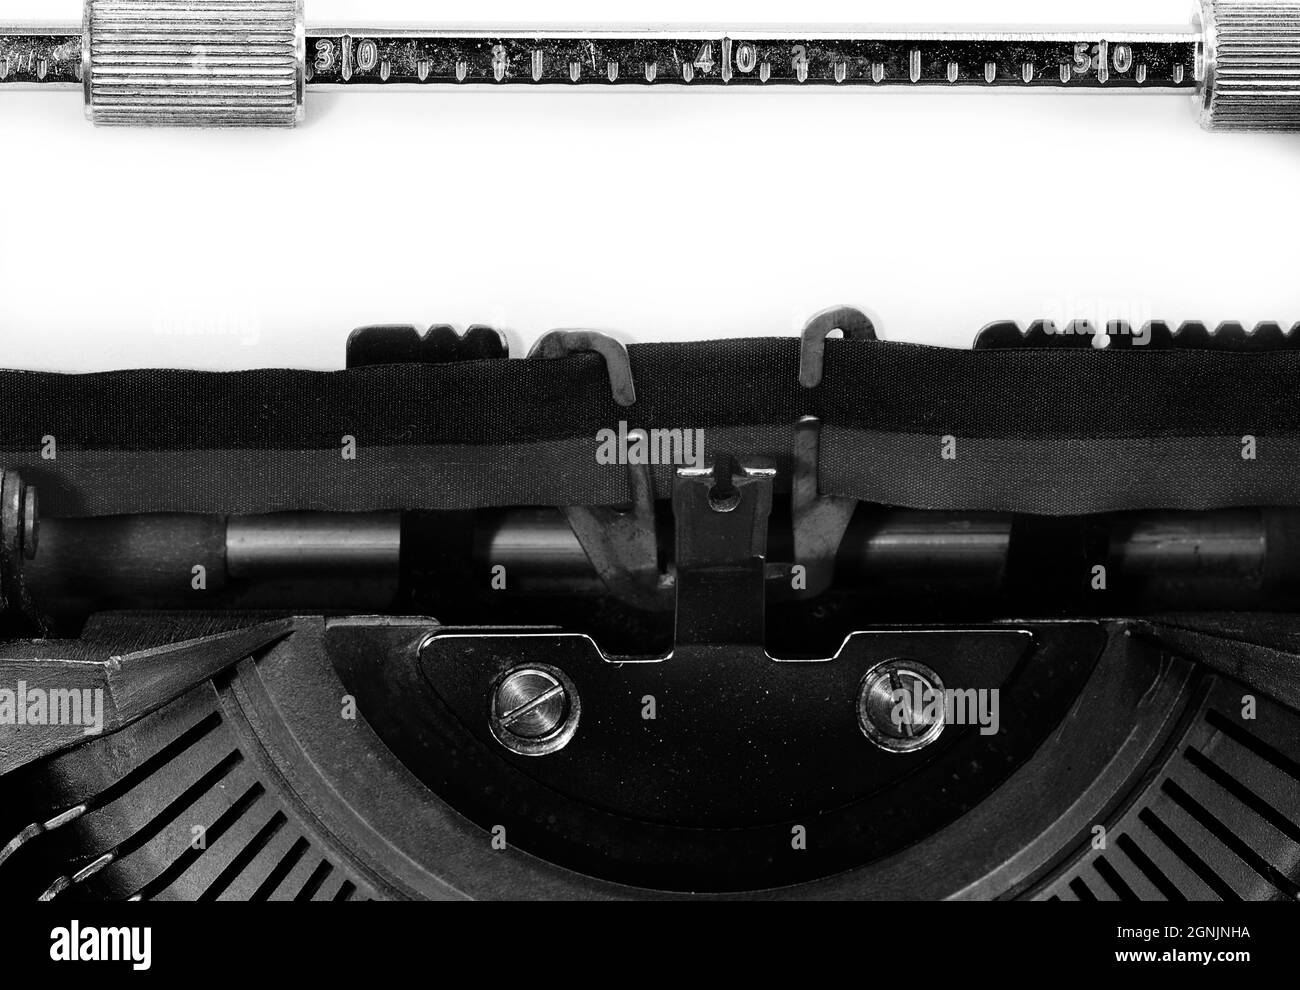 Detail der Schreibmaschine mit einem leeren Blatt Papier ohne jede Schrift, ideal für die Personalisierung Ihrer eigenen Text oder Nachricht Stockfoto